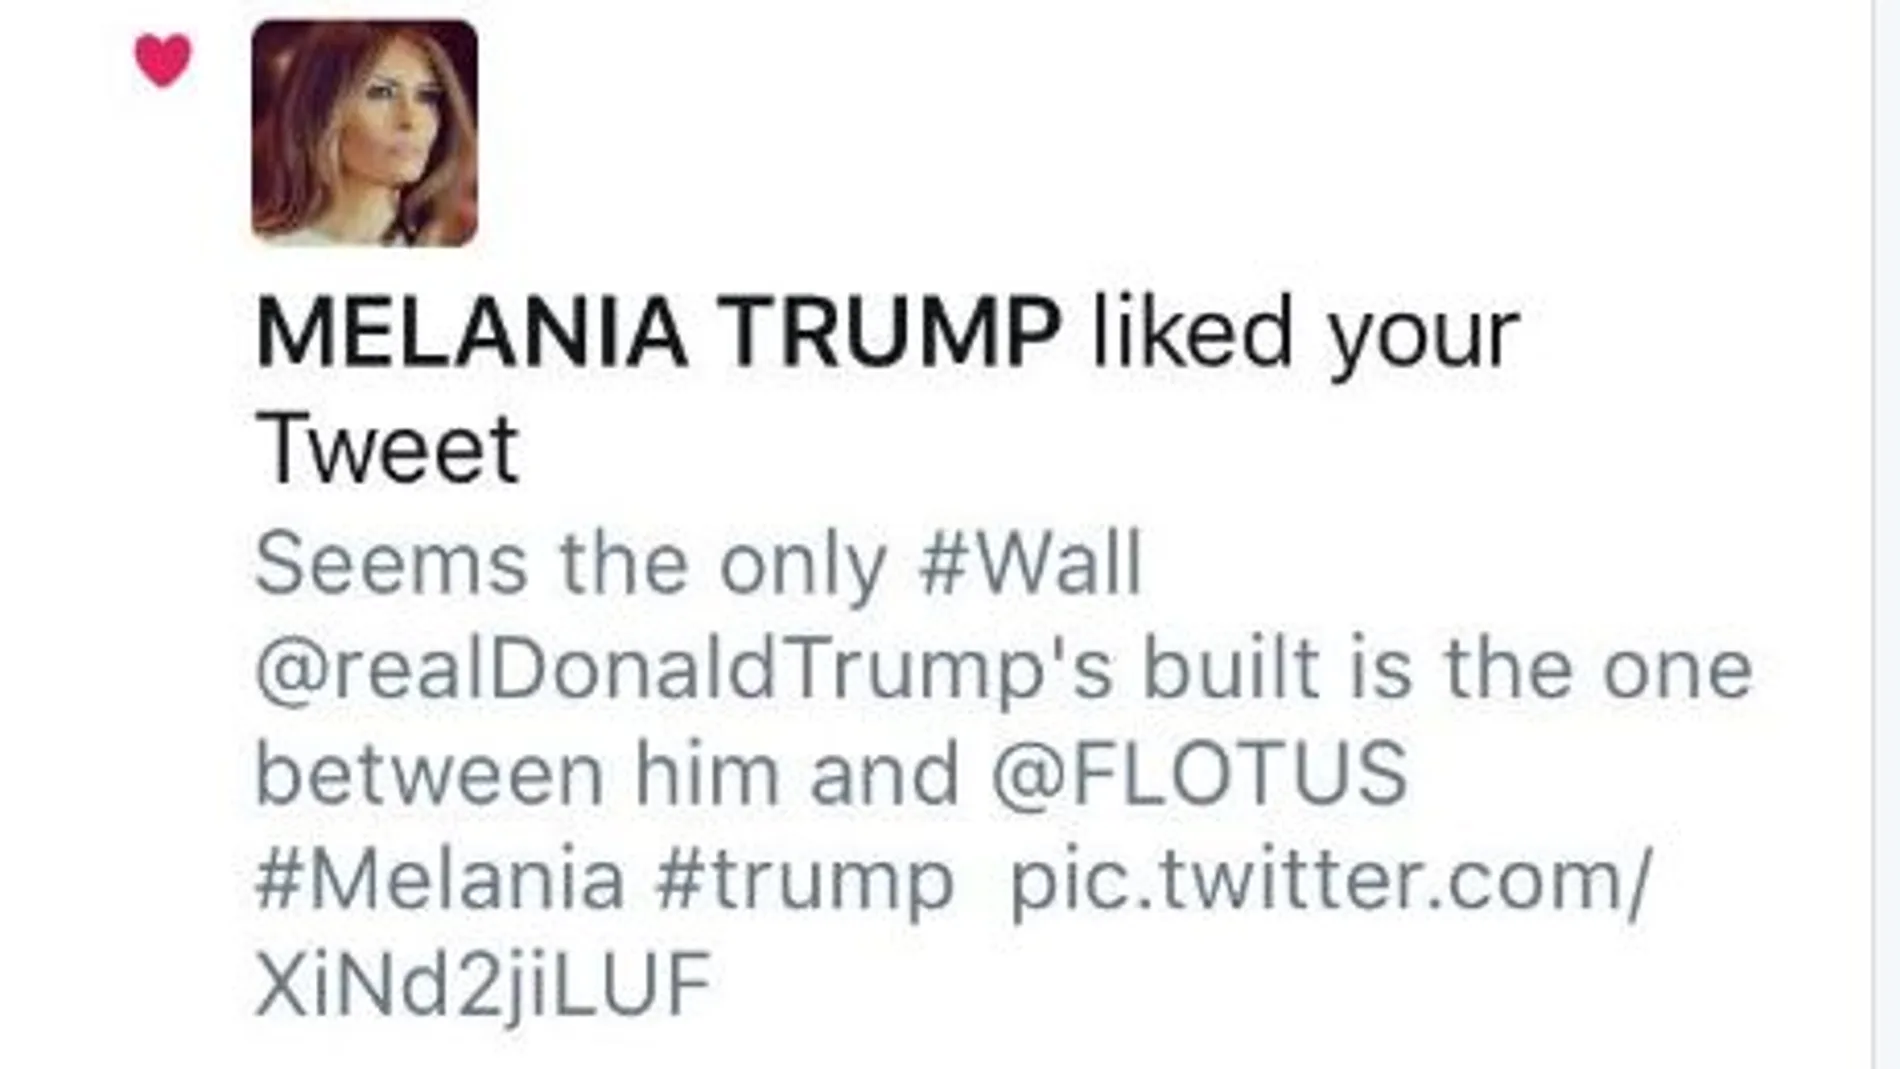 El «like» de Melania Trump que pone en evidencia su relación matrimonial